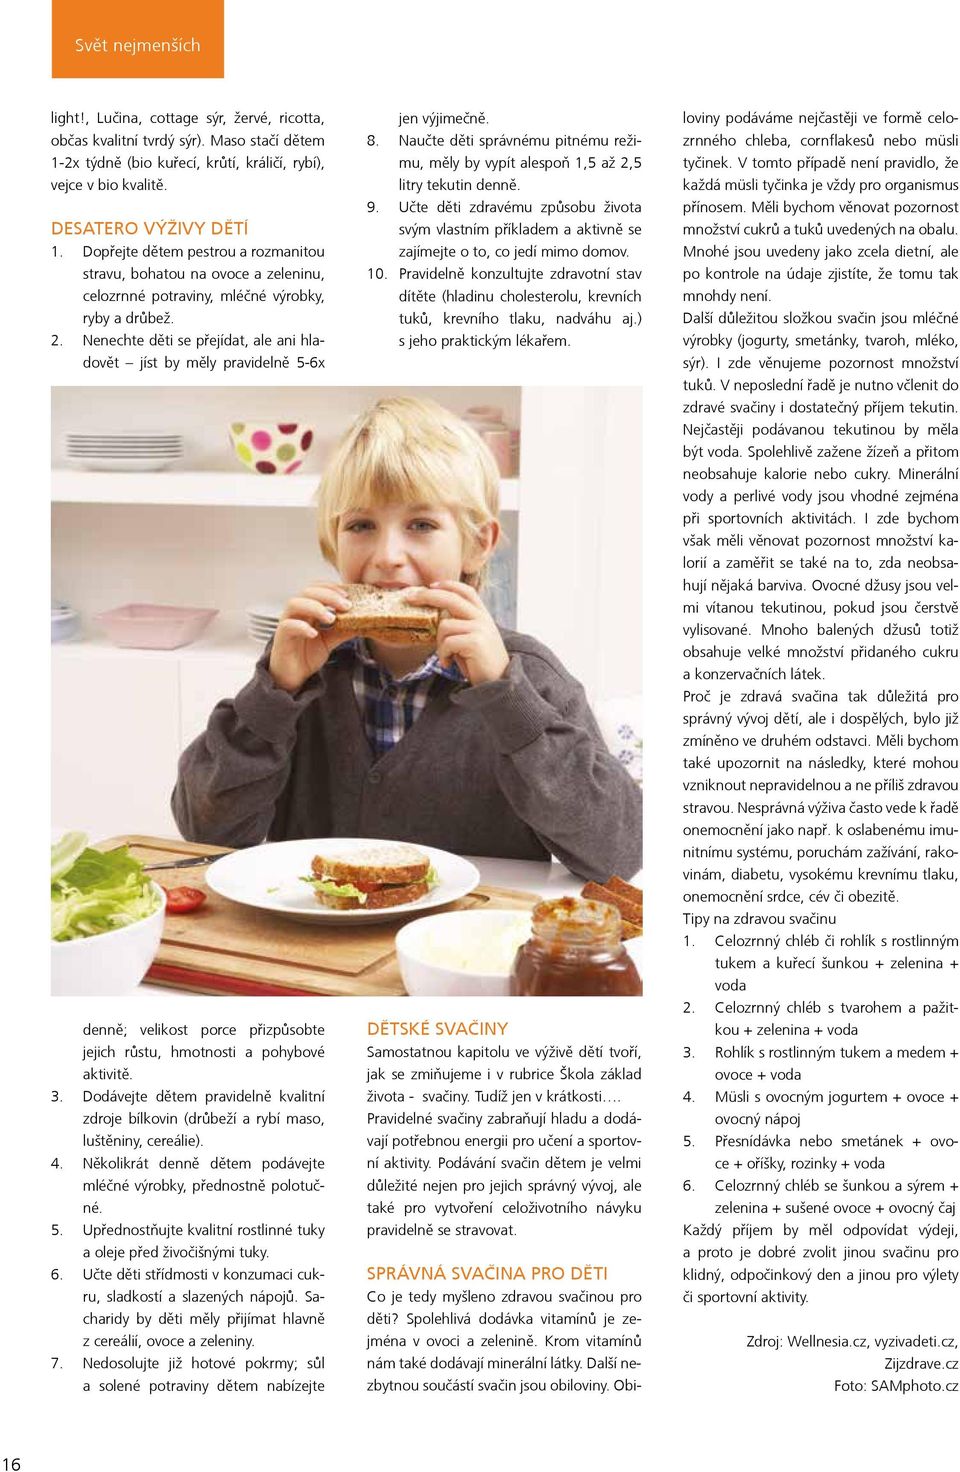 Nenechte děti se přejídat, ale ani hladovět jíst by měly pravidelně 5-6x denně; velikost porce přizpůsobte jejich růstu, hmotnosti a pohybové aktivitě. 3.